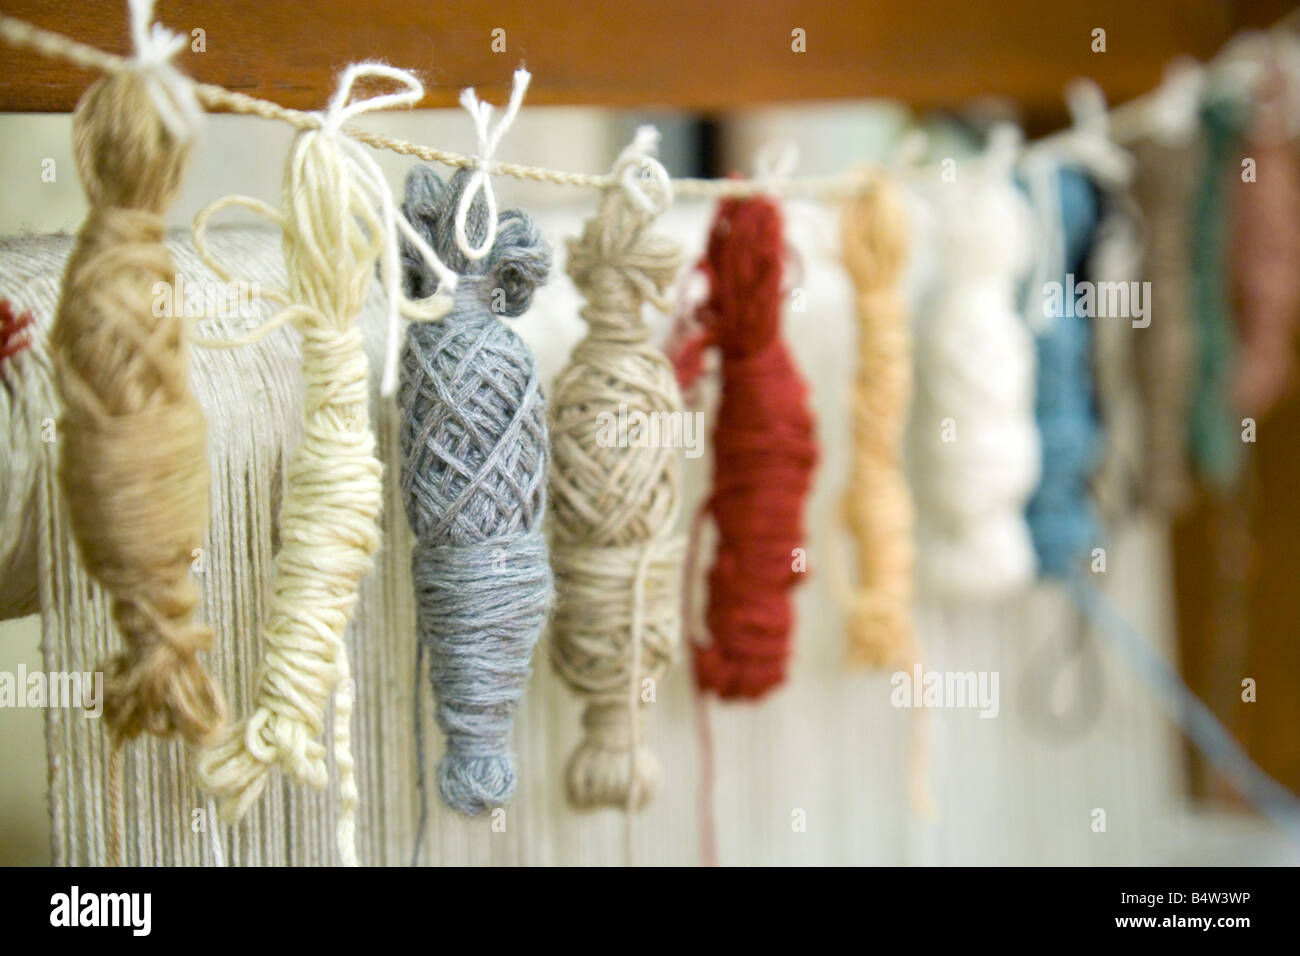 Farbige Wolle auf einem Webstuhl verwendet für die Herstellung von indischen Teppiche und Teppichböden, New Delhi, Indien Stockfoto